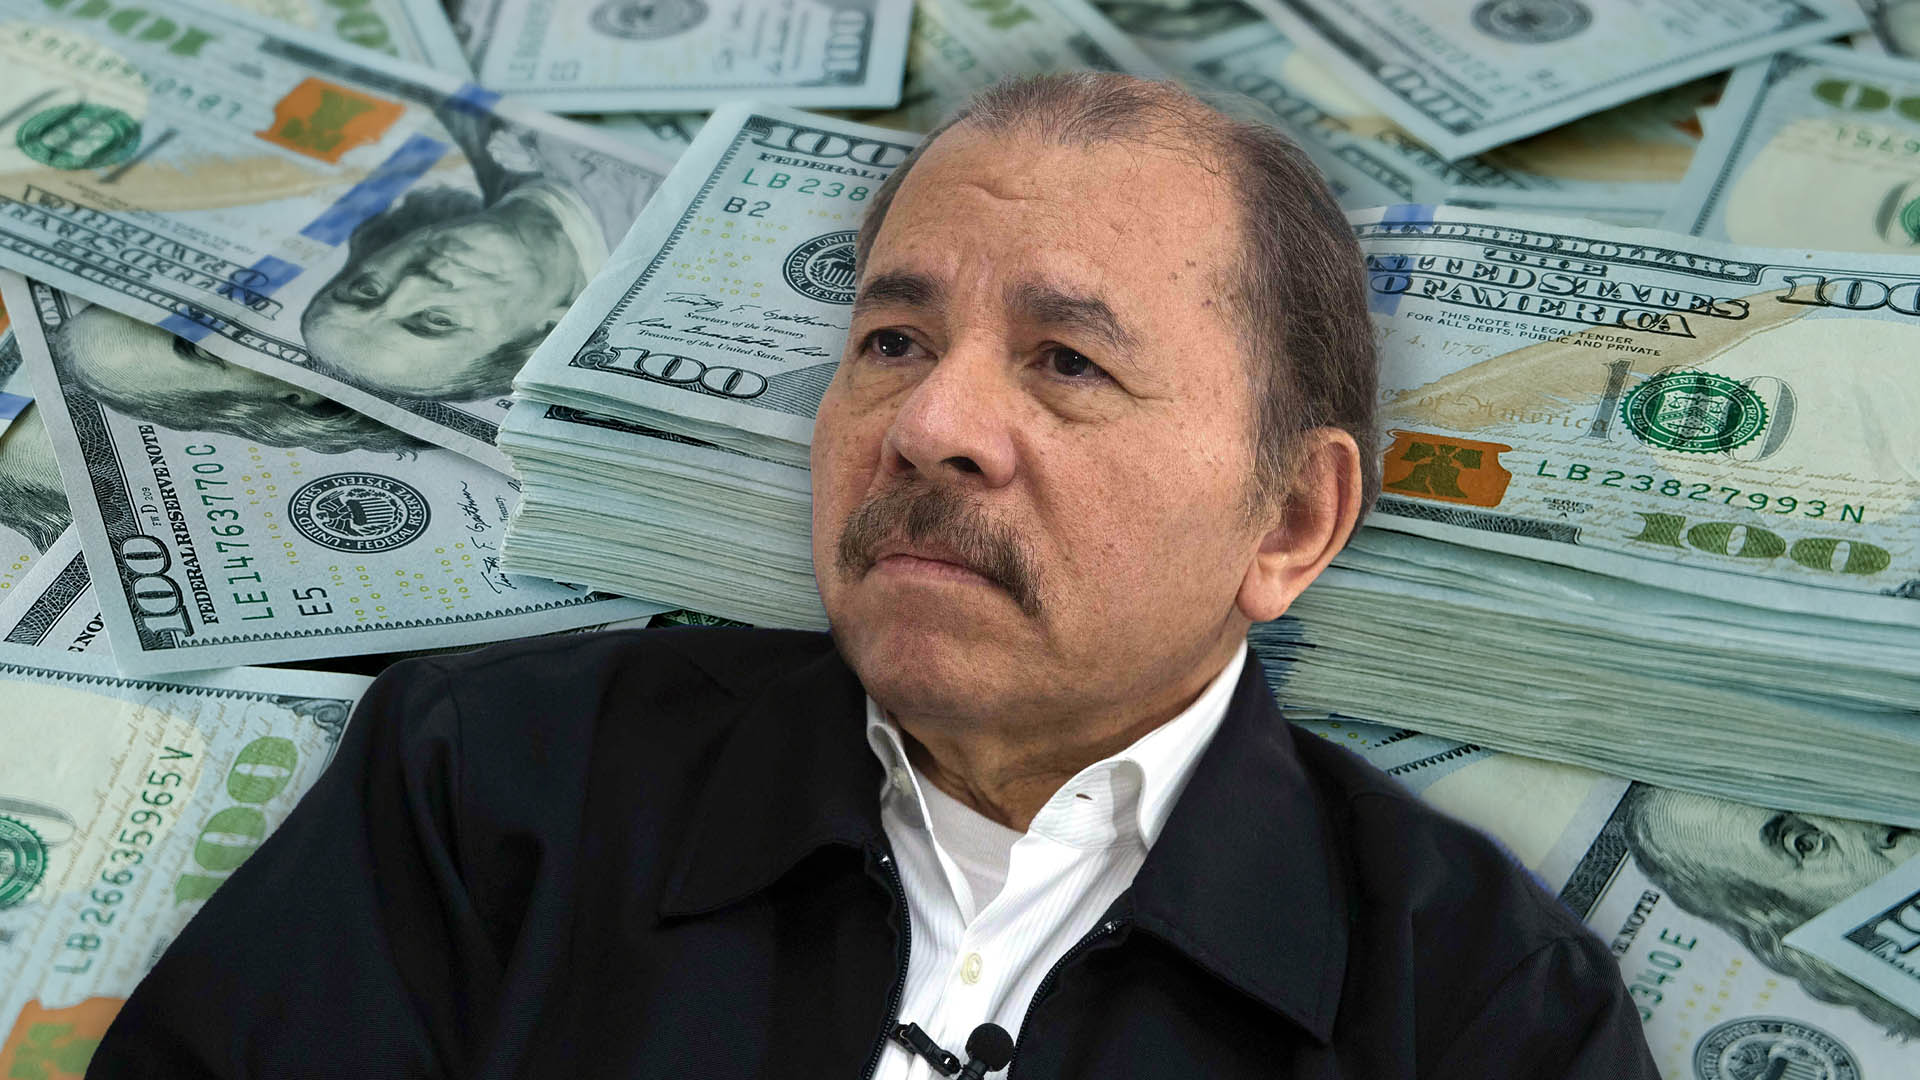 El principal interés de la dictadura de Daniel ortega es acumular dinero, y ara ello usa el poder de manera fraudulenta, afirma Enrique Sáenz.